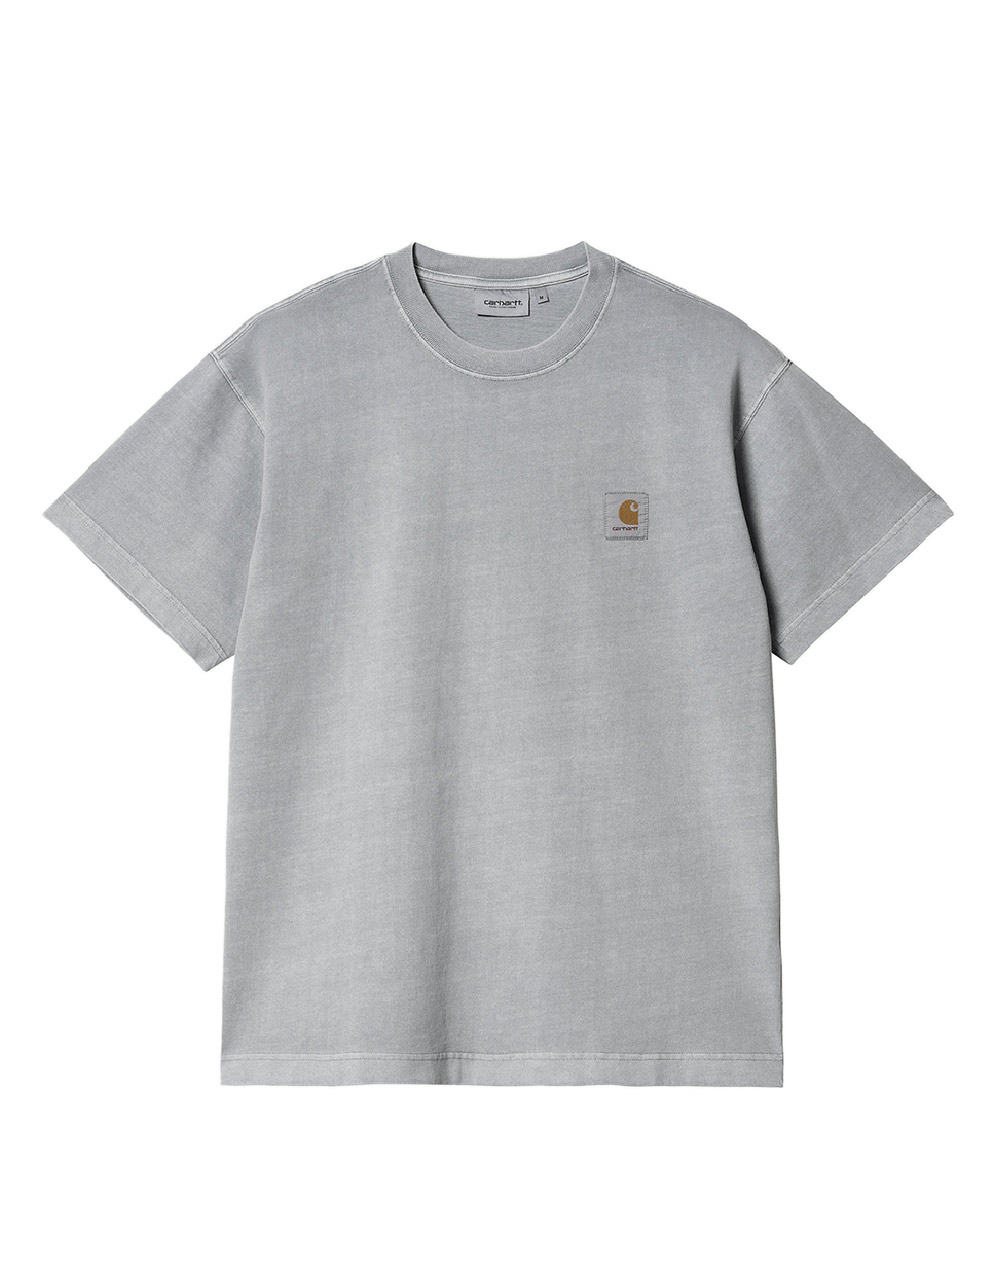 Carhartt WIP – S/S Vista T-Shirt